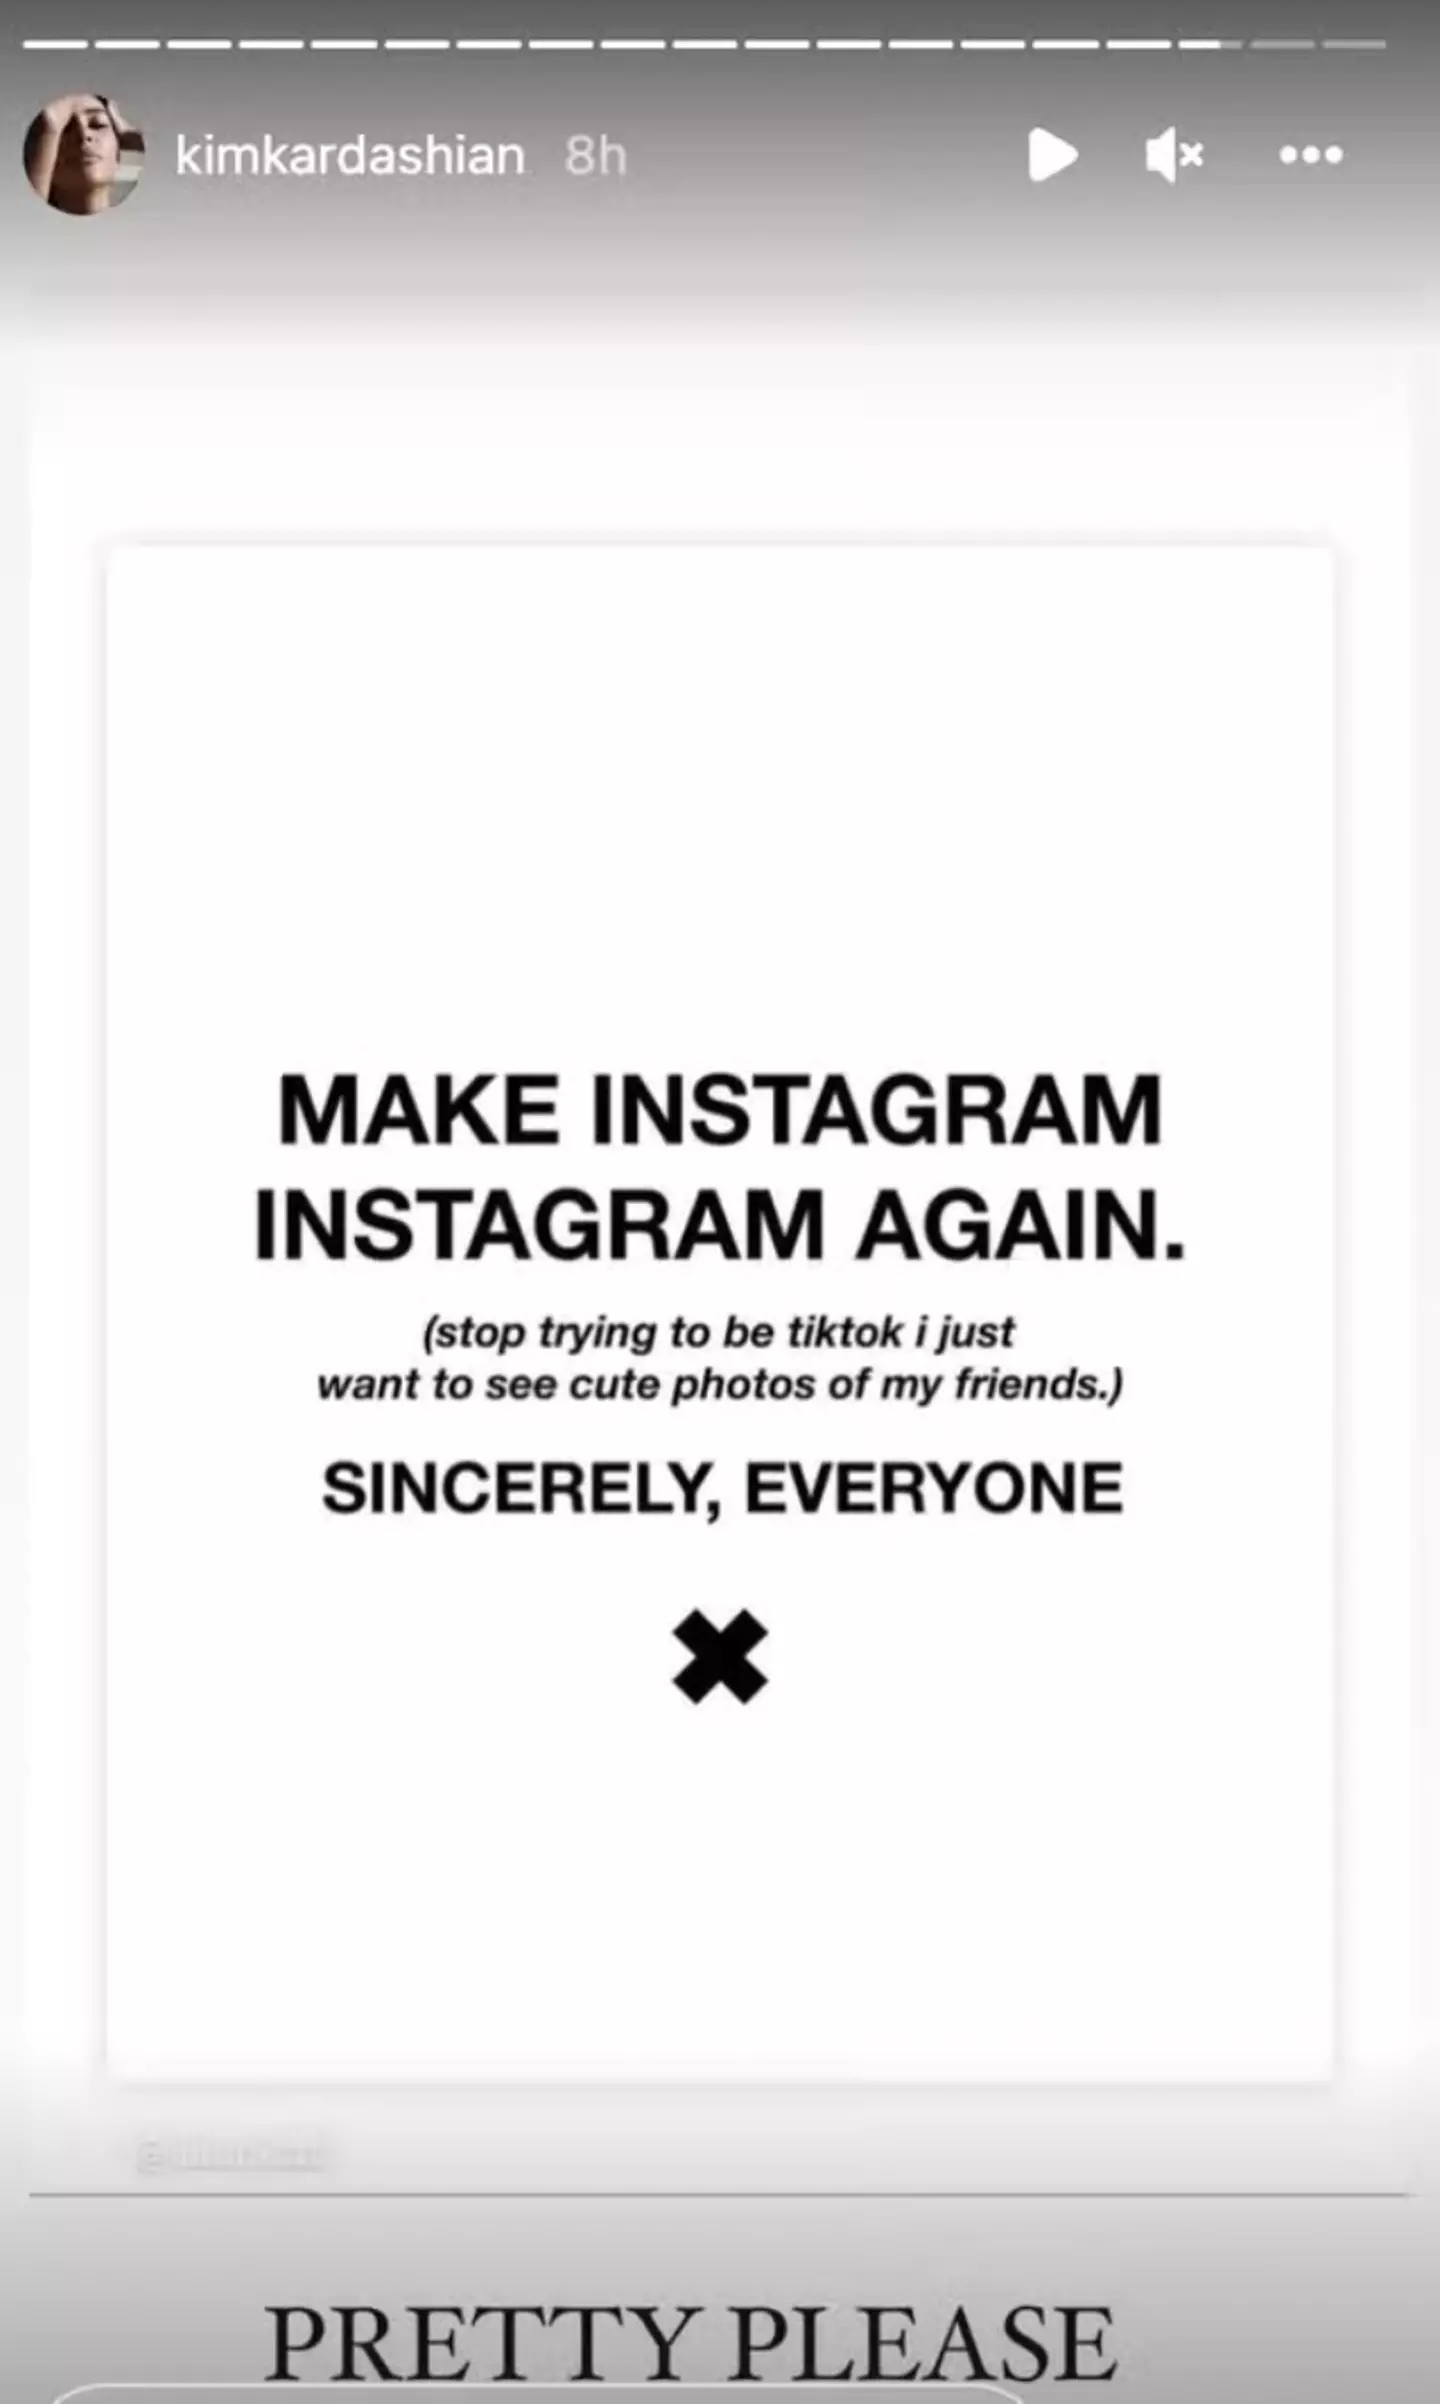 Kim Kardashian isn't happy with Instagram.